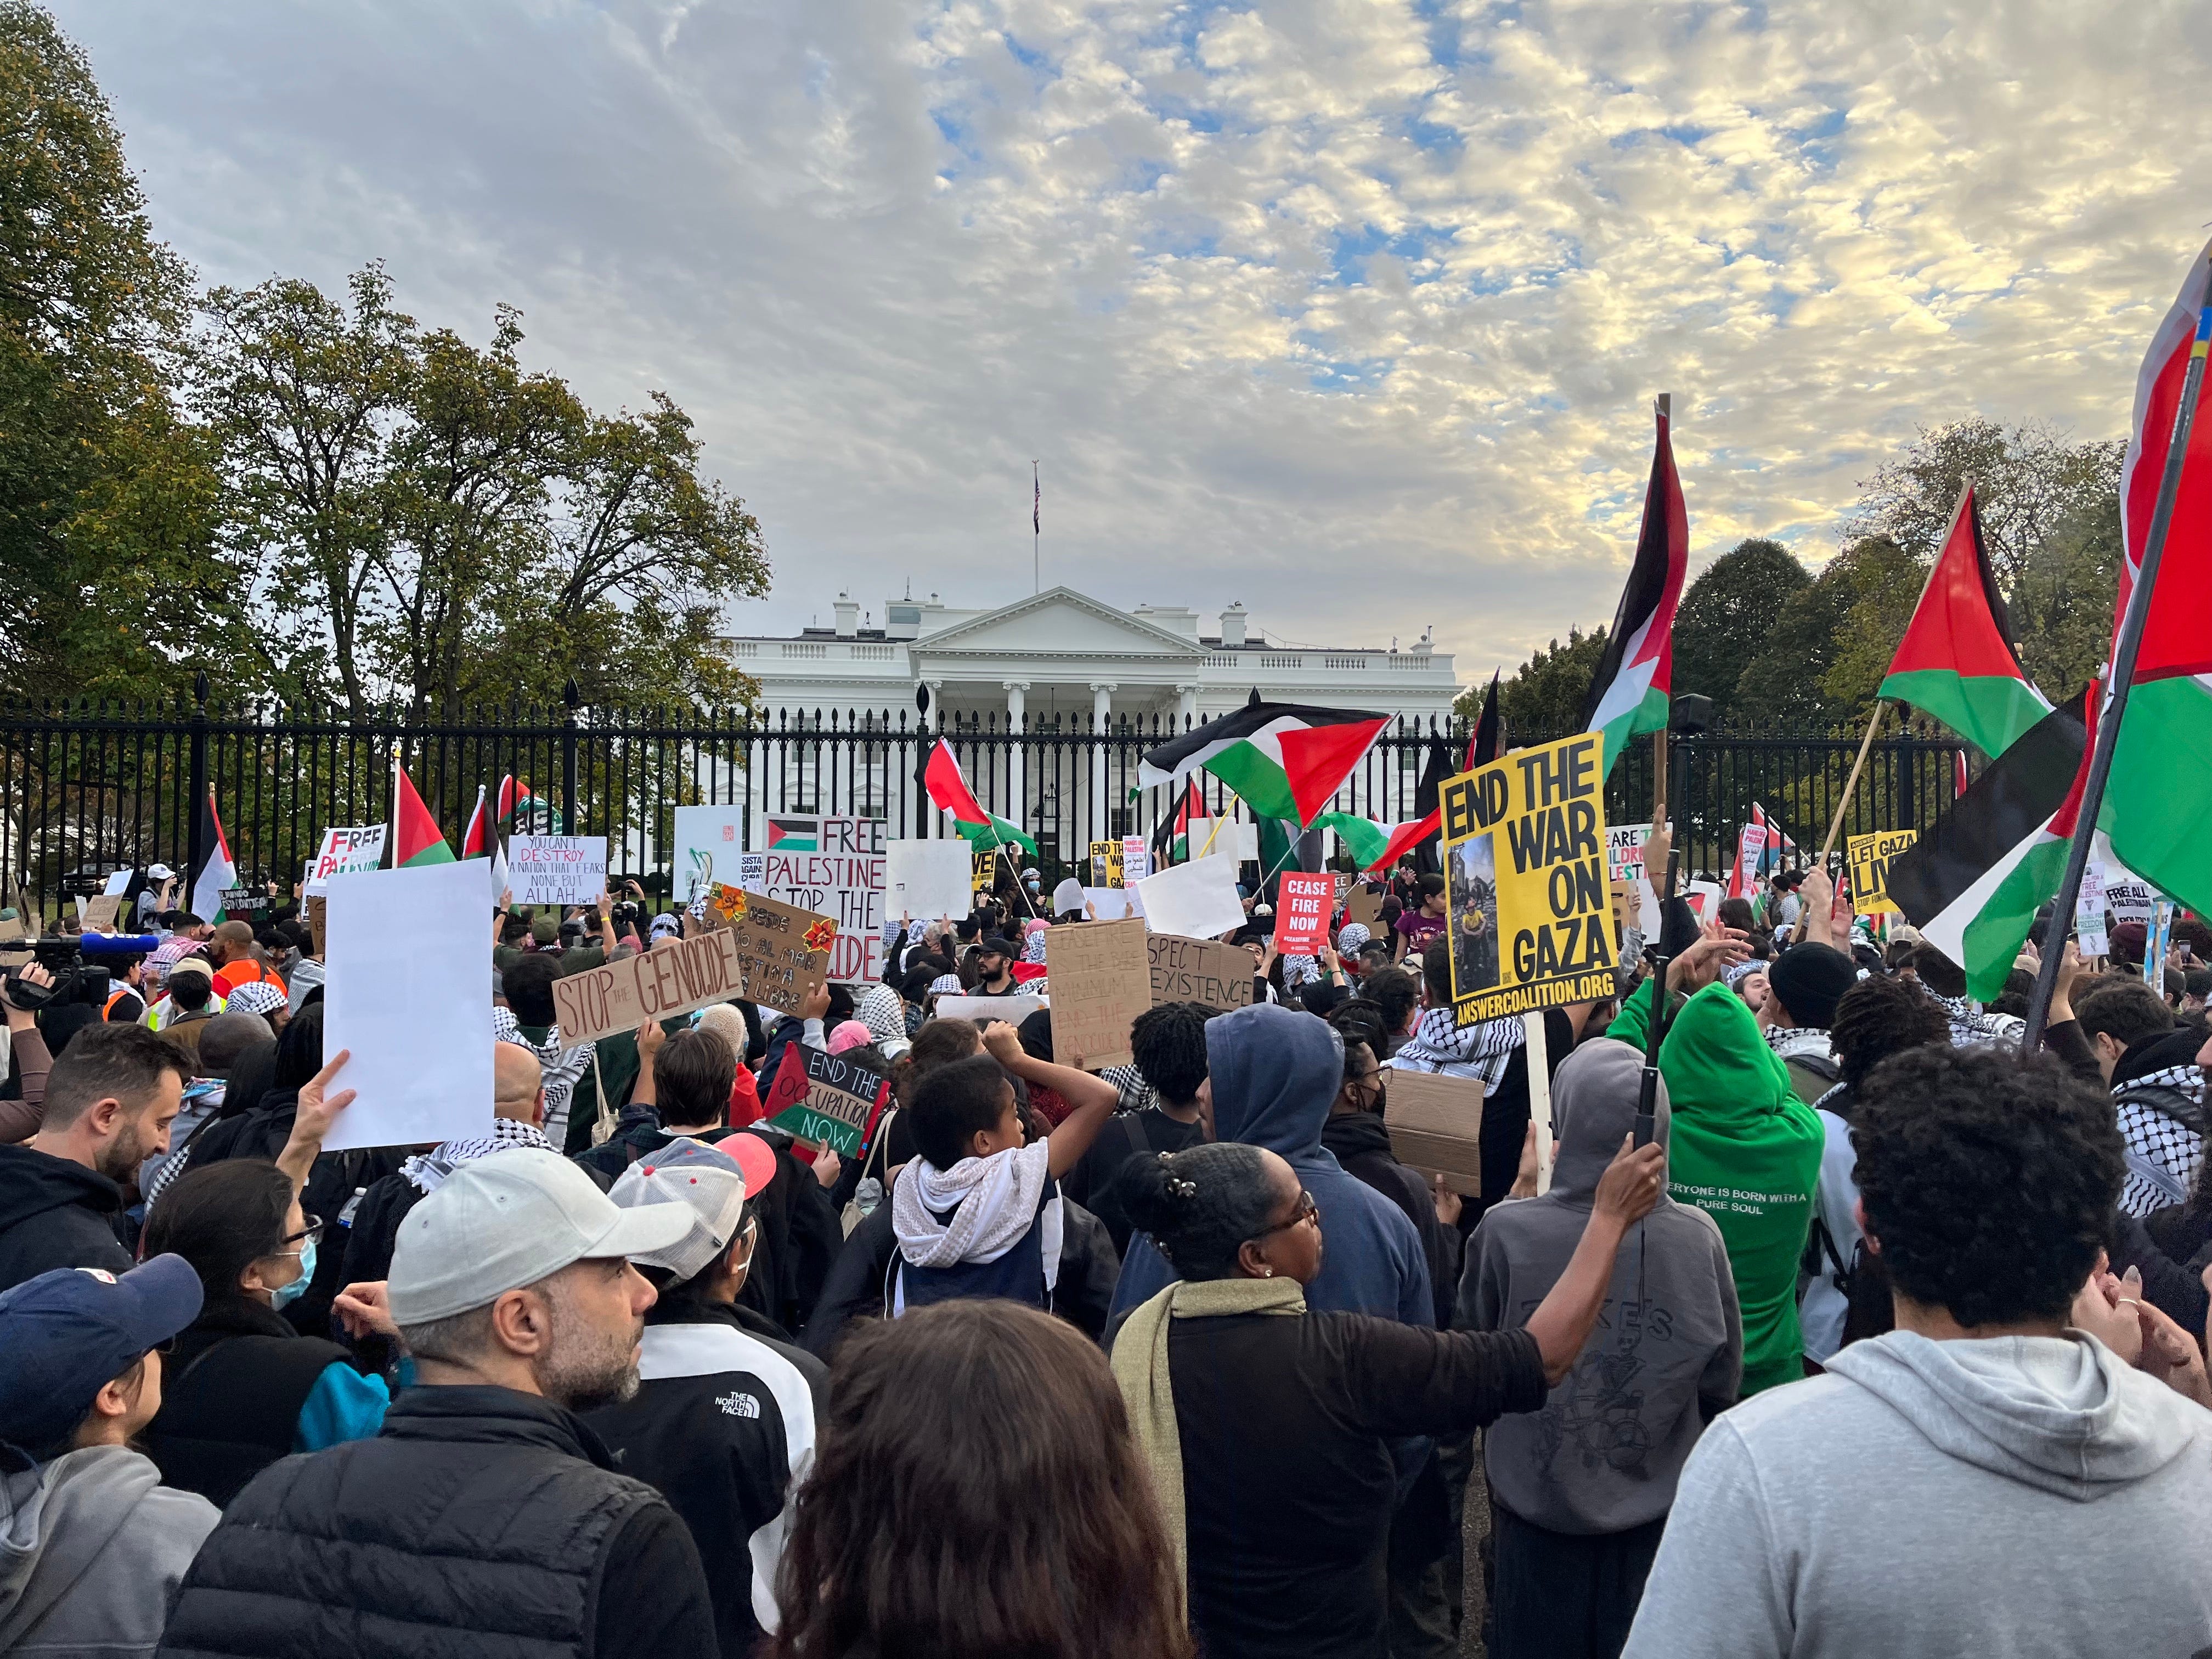 Pro-palästinensische Demonstranten schwenken Fahnen und Schilder vor dem Weißen Haus in Washington, D.C.